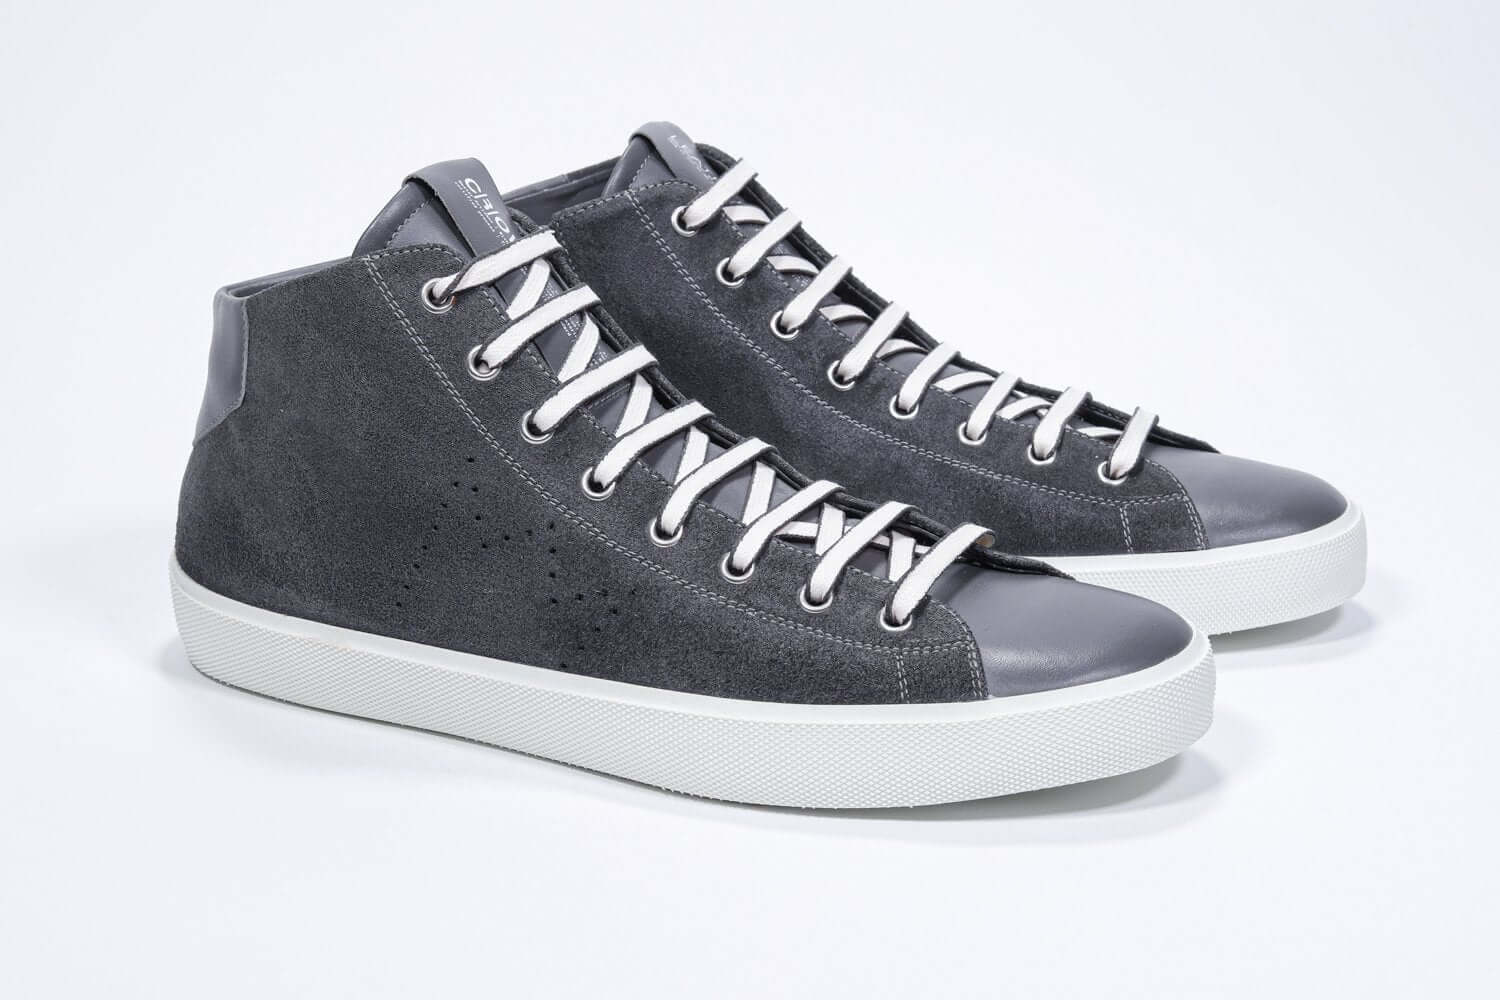 Vue de trois quarts avant du modèle mid top gris foncé sneaker à tige entièrement en daim avec logo perforé, fermeture à glissière interne et semelle blanche.